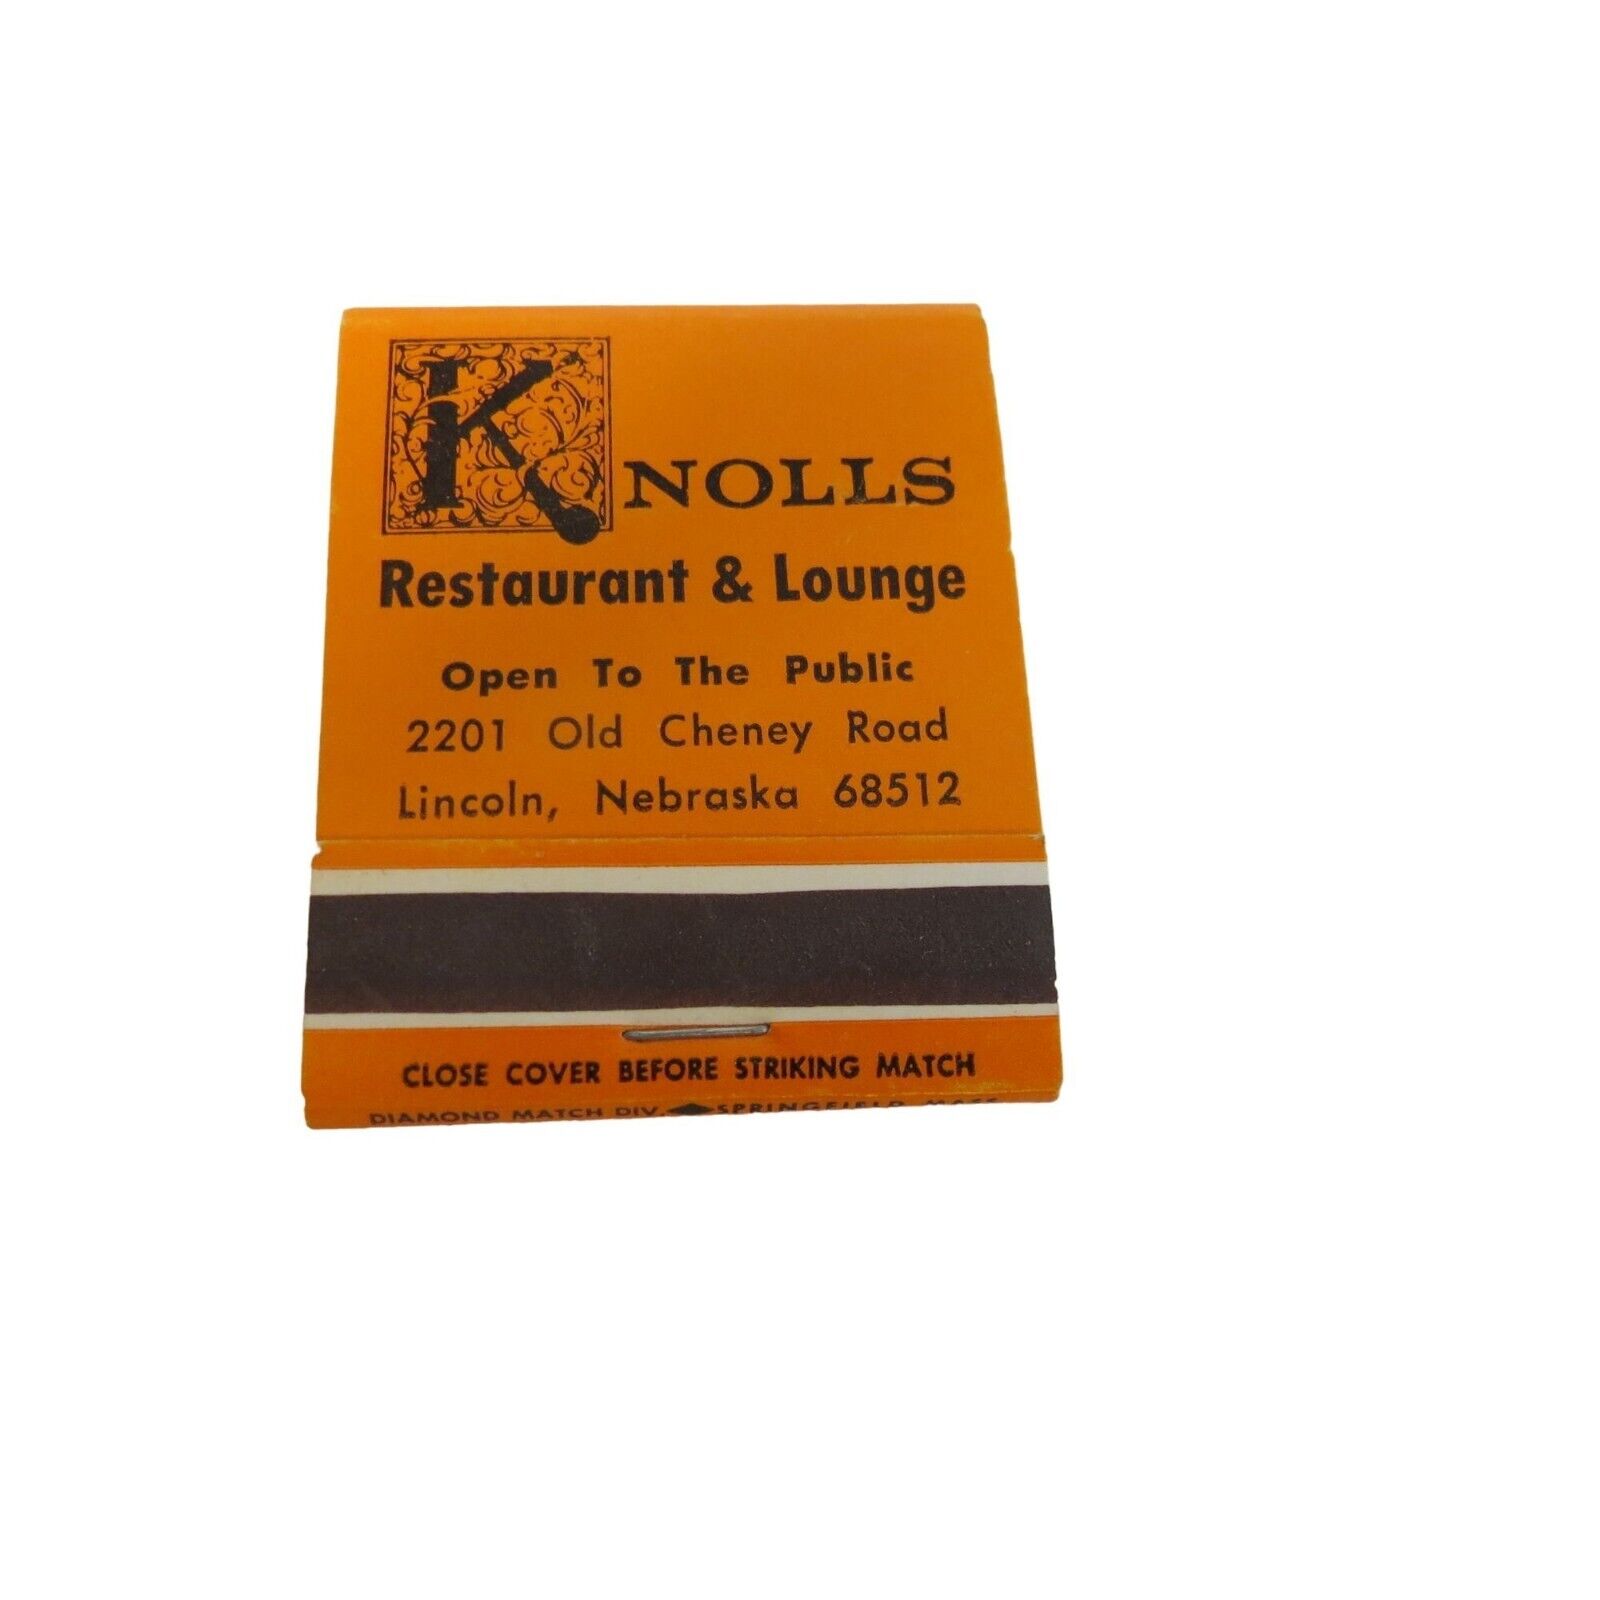 Knolls Restaurant & Lounge Lincoln Nebraska Matchbook Advertising Orange